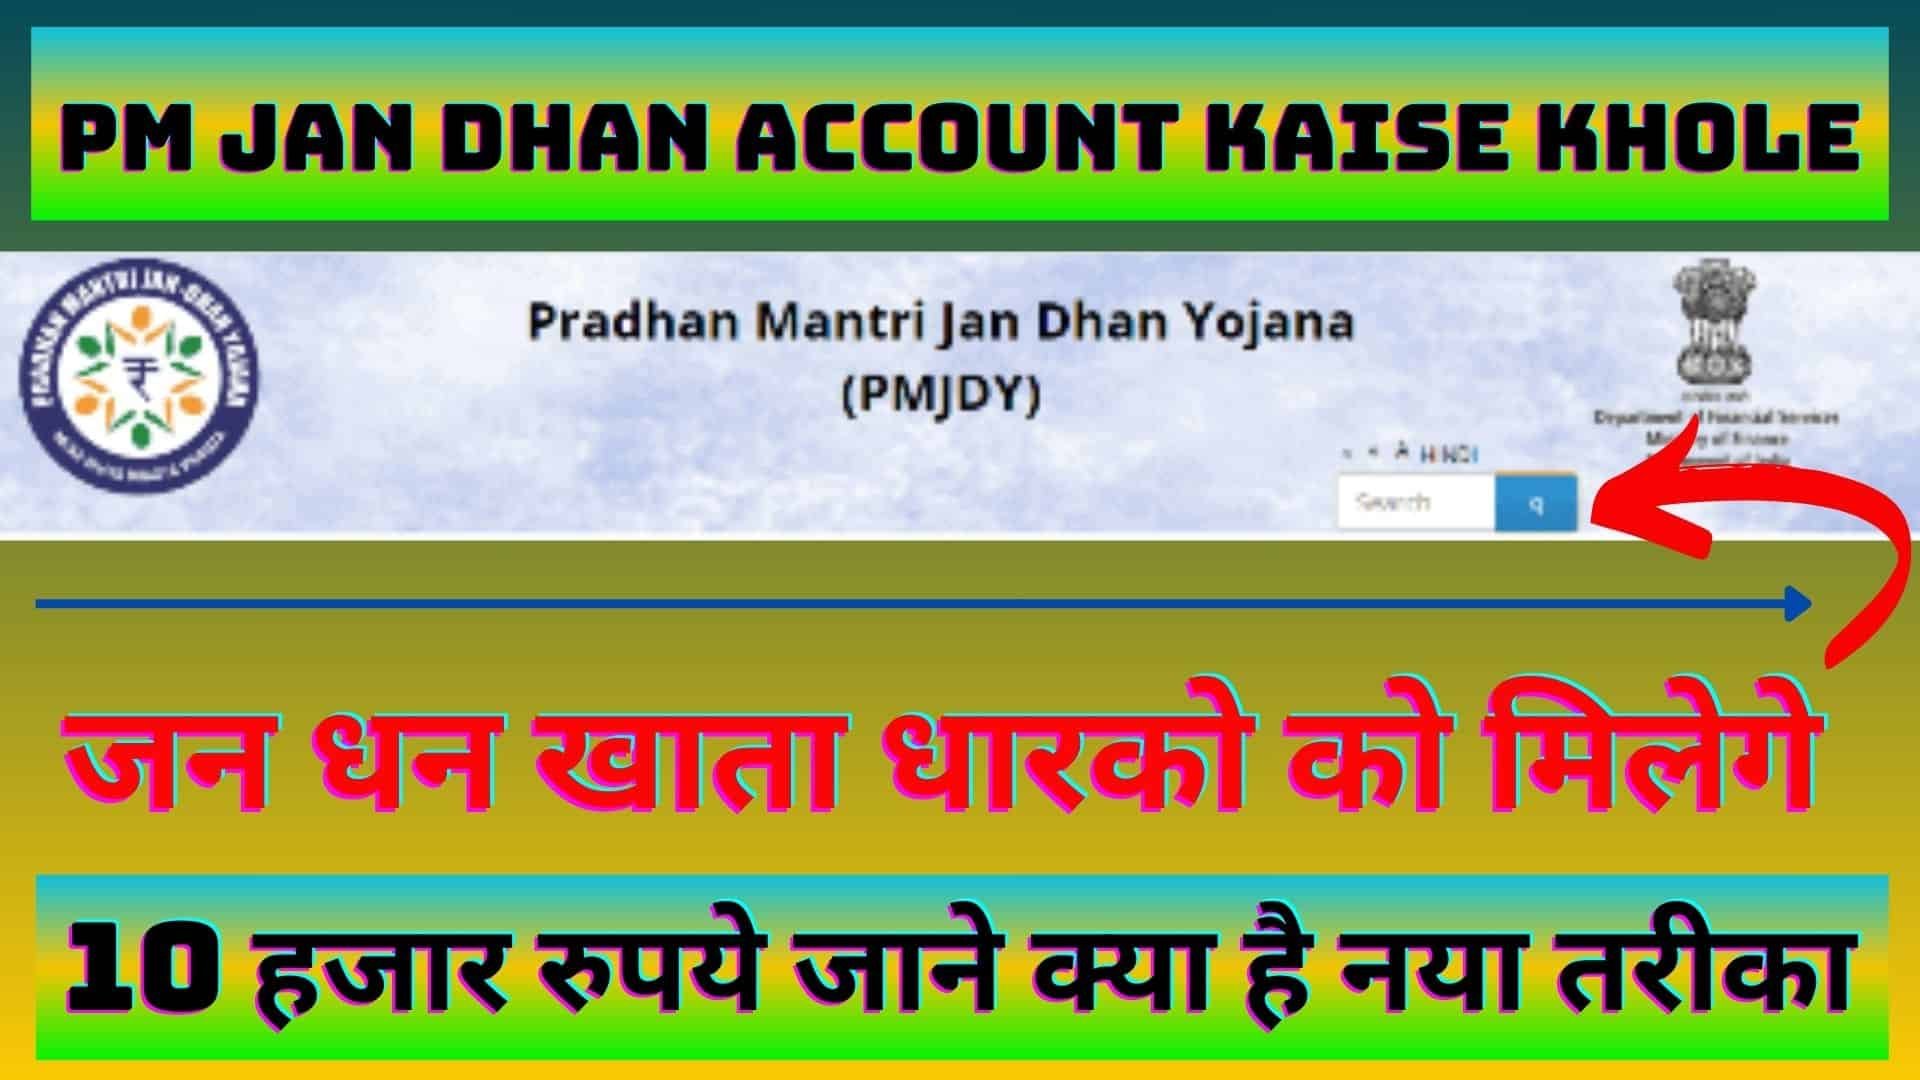 PM Jan Dhan Yojana Account Kaise Khole : जन धन खाता धारको को मिलेगे 10 हजार रुपये जाने क्या है नया तरीका